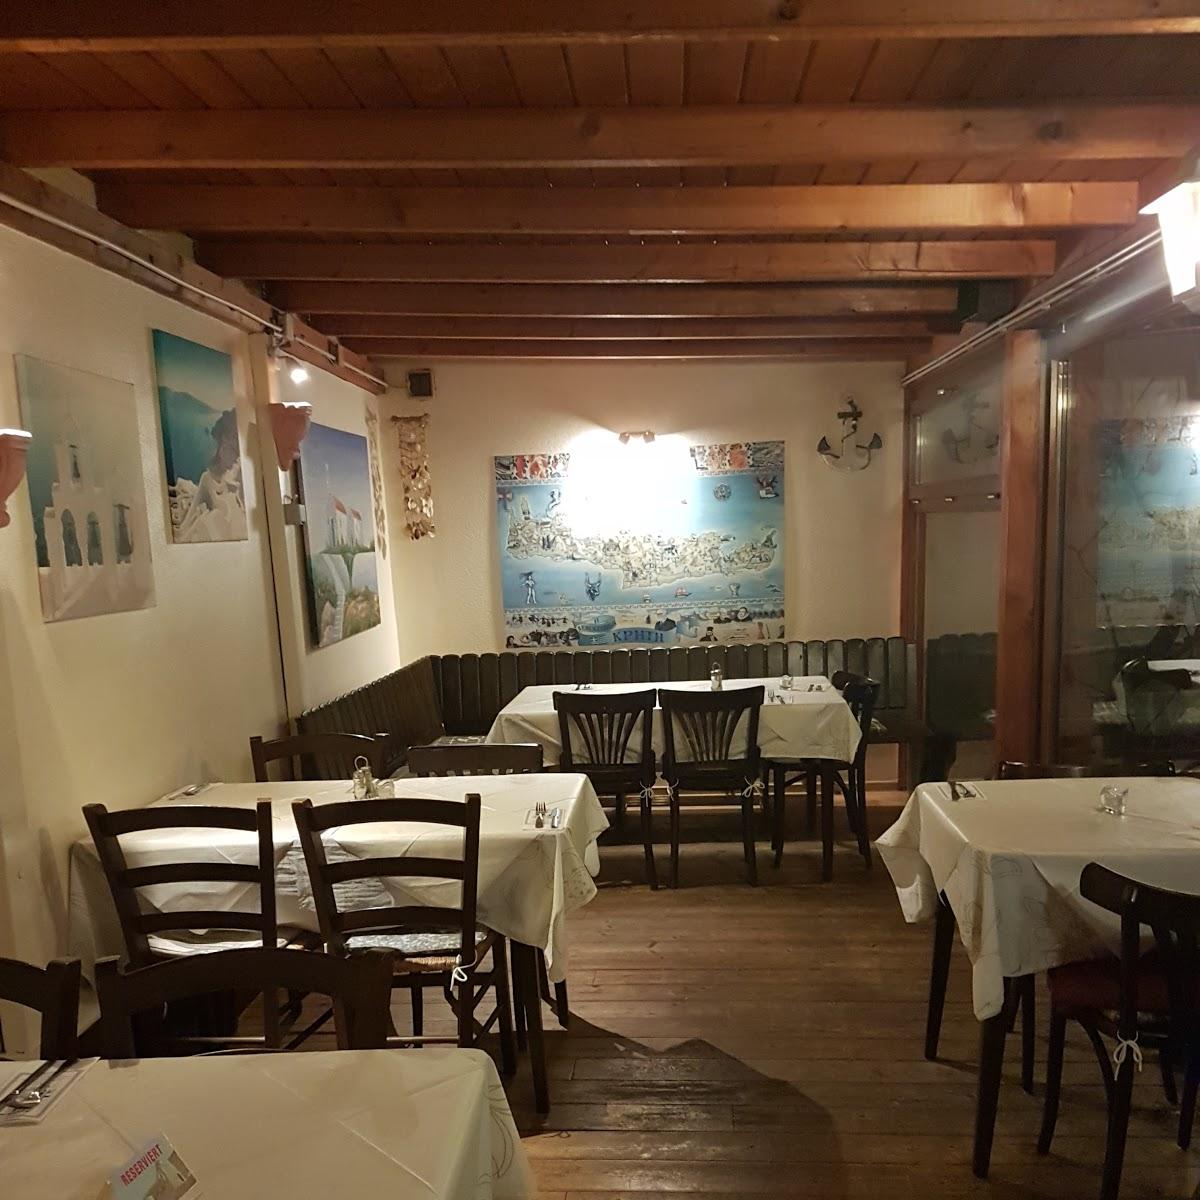 Restaurant "Kreta Taverne Kunos" in  Neuwied